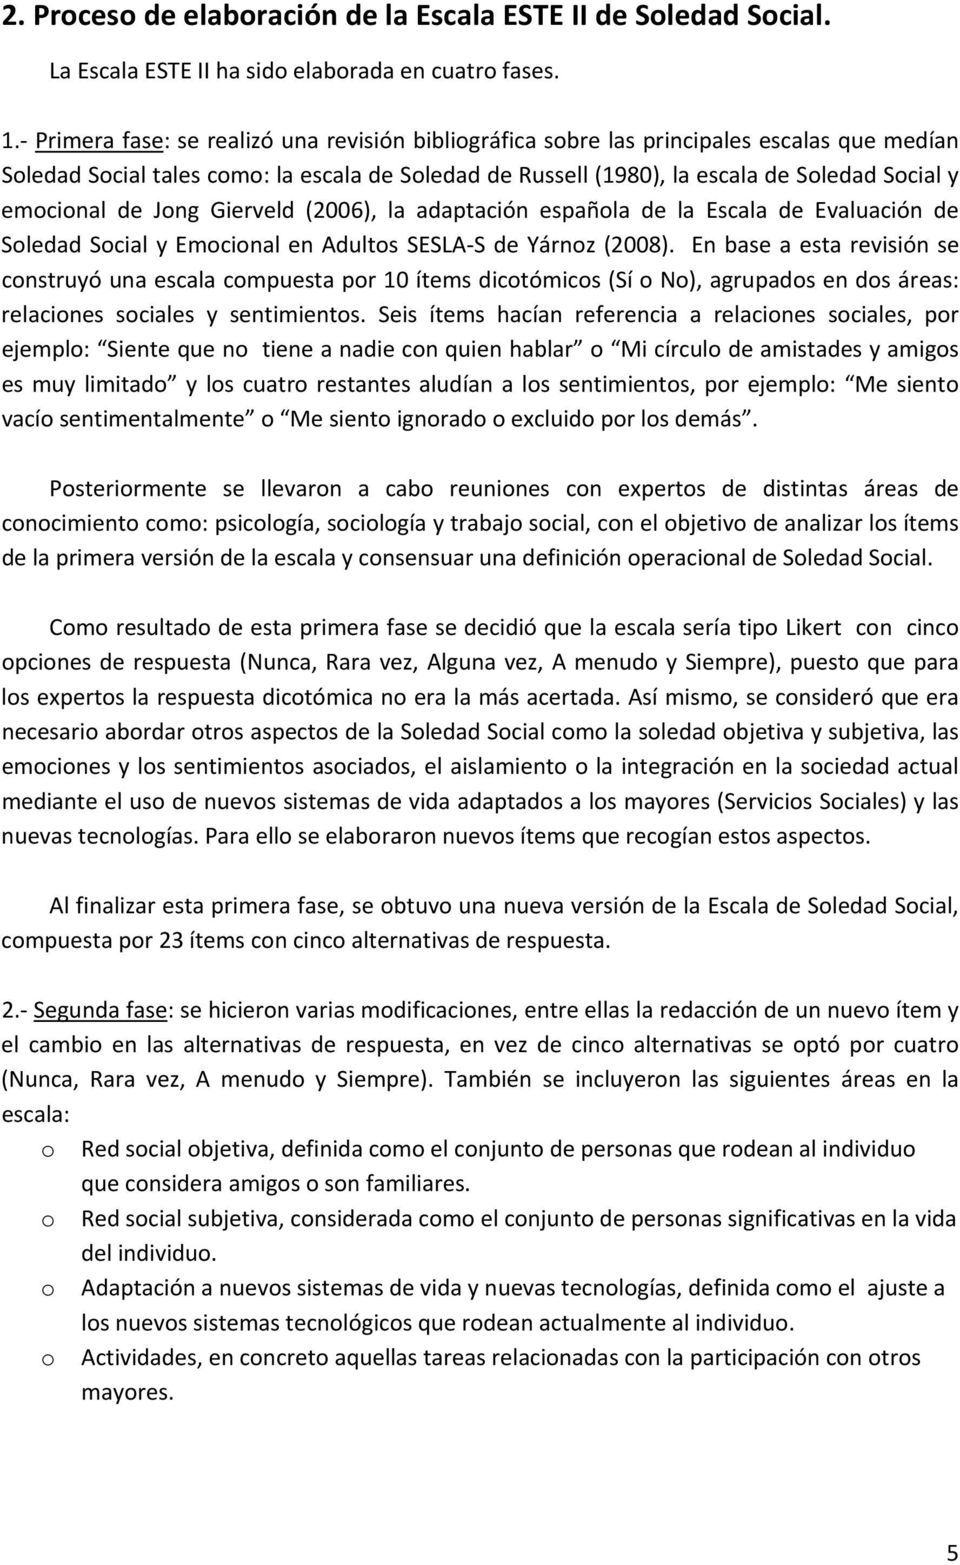 de Jong Gierveld (2006), la adaptación española de la Escala de Evaluación de Soledad Social y Emocional en Adultos SESLA S de Yárnoz (2008).